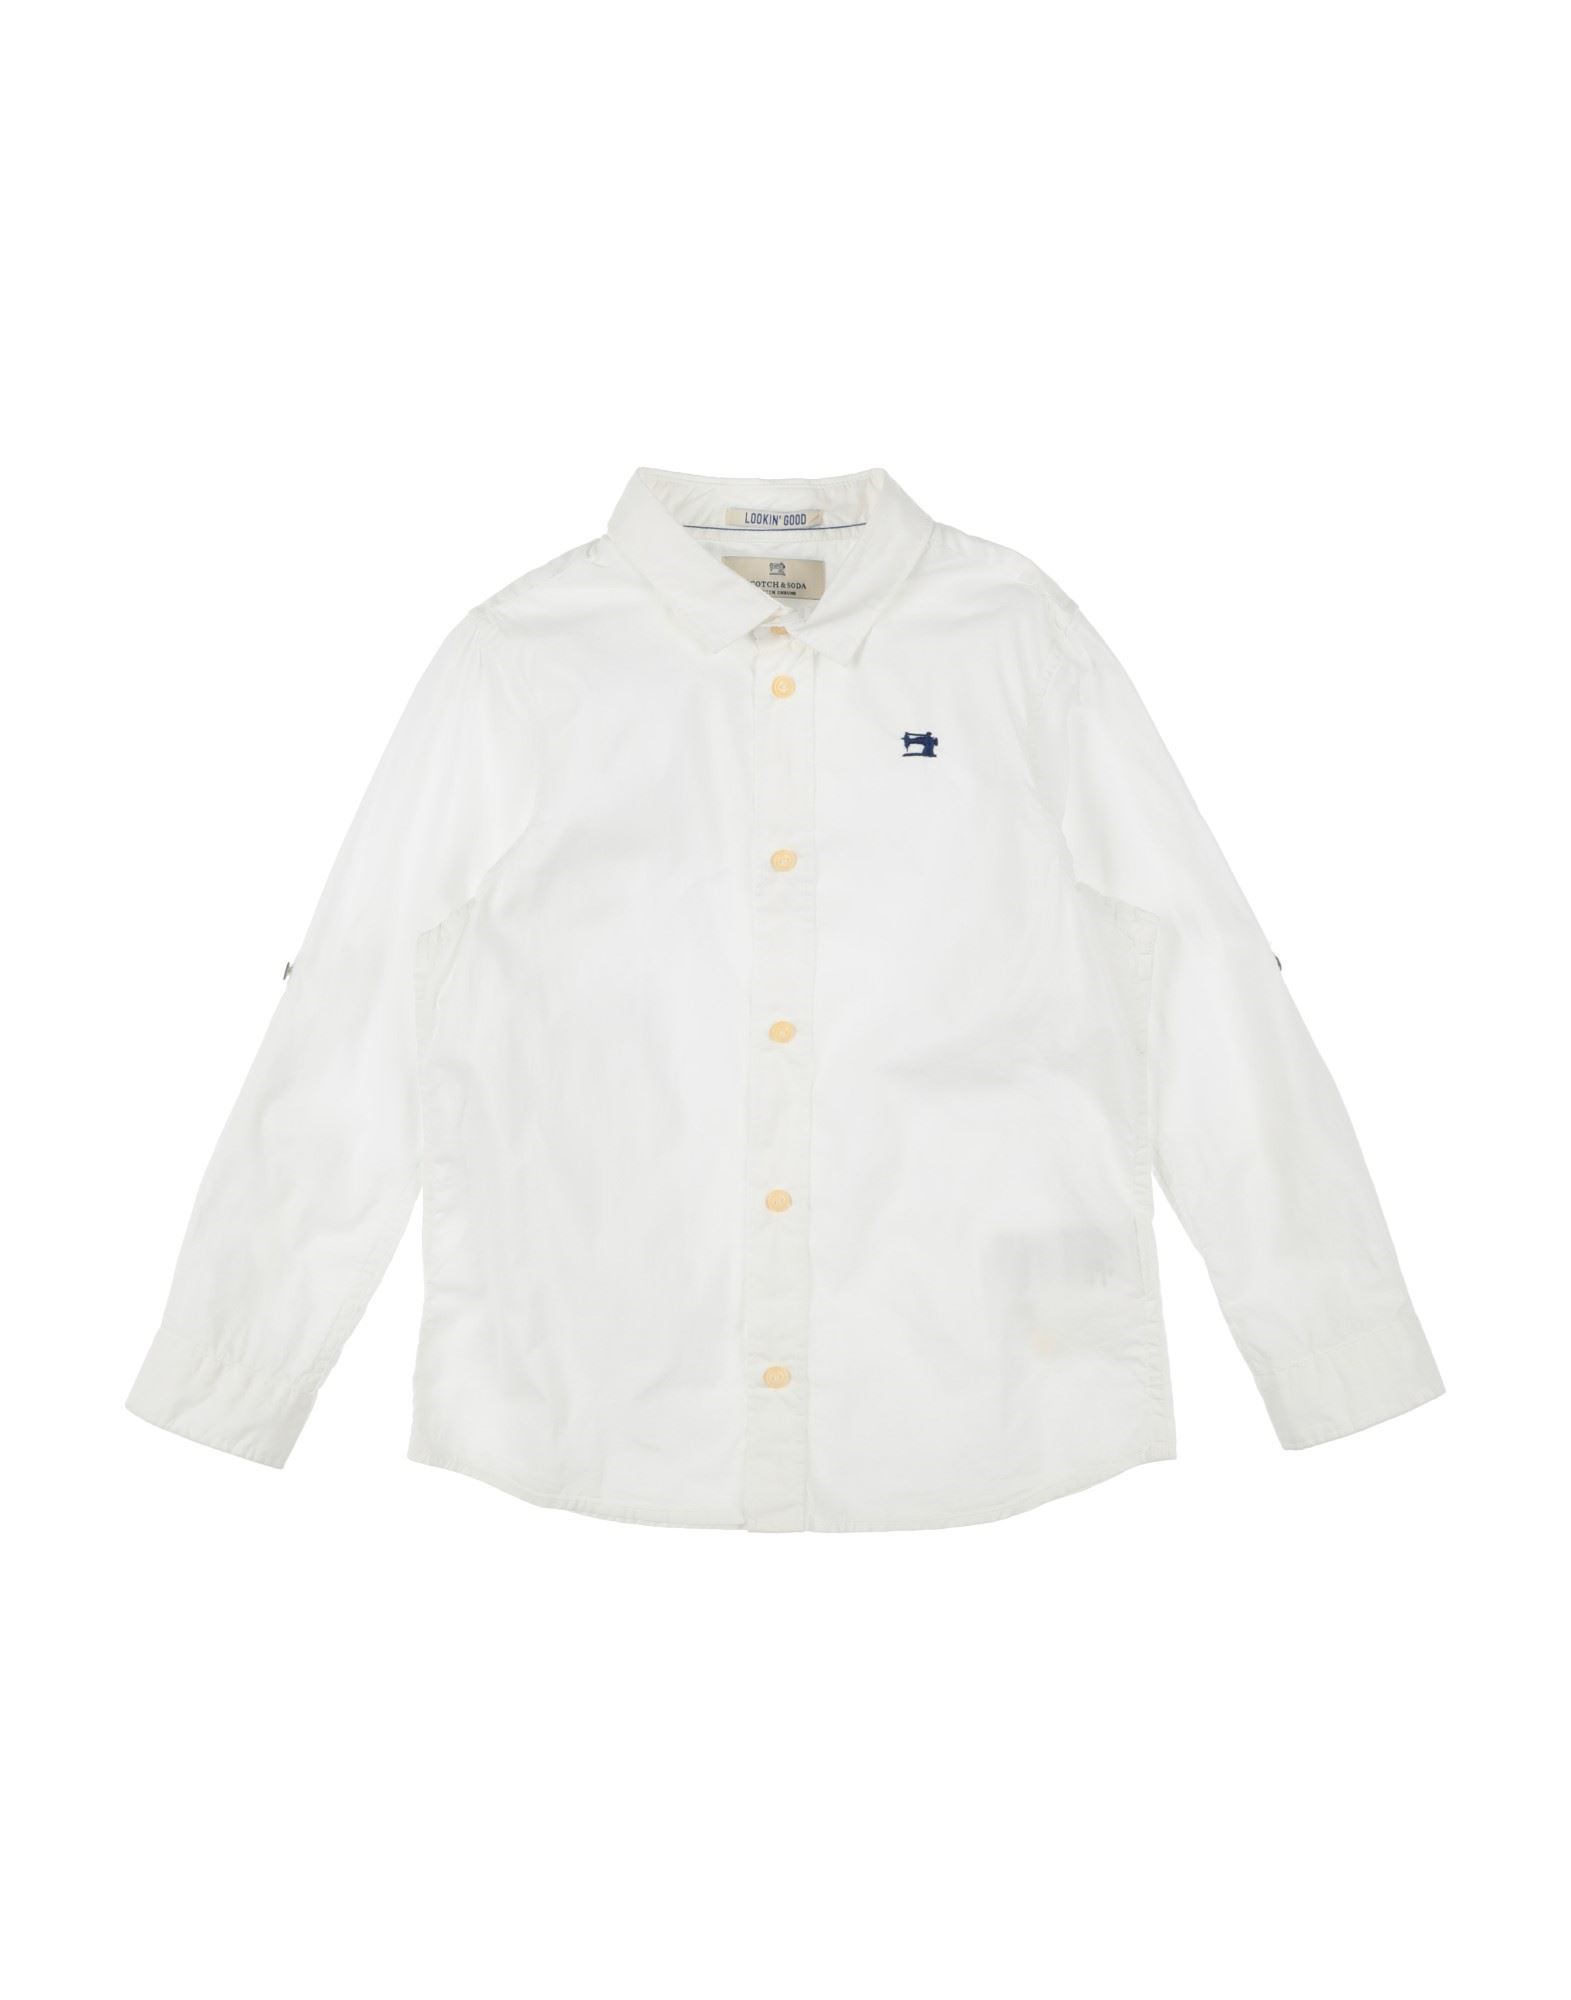 Scotch & Shrunk Kids'  Toddler Boy Shirt White Size 6 Cotton